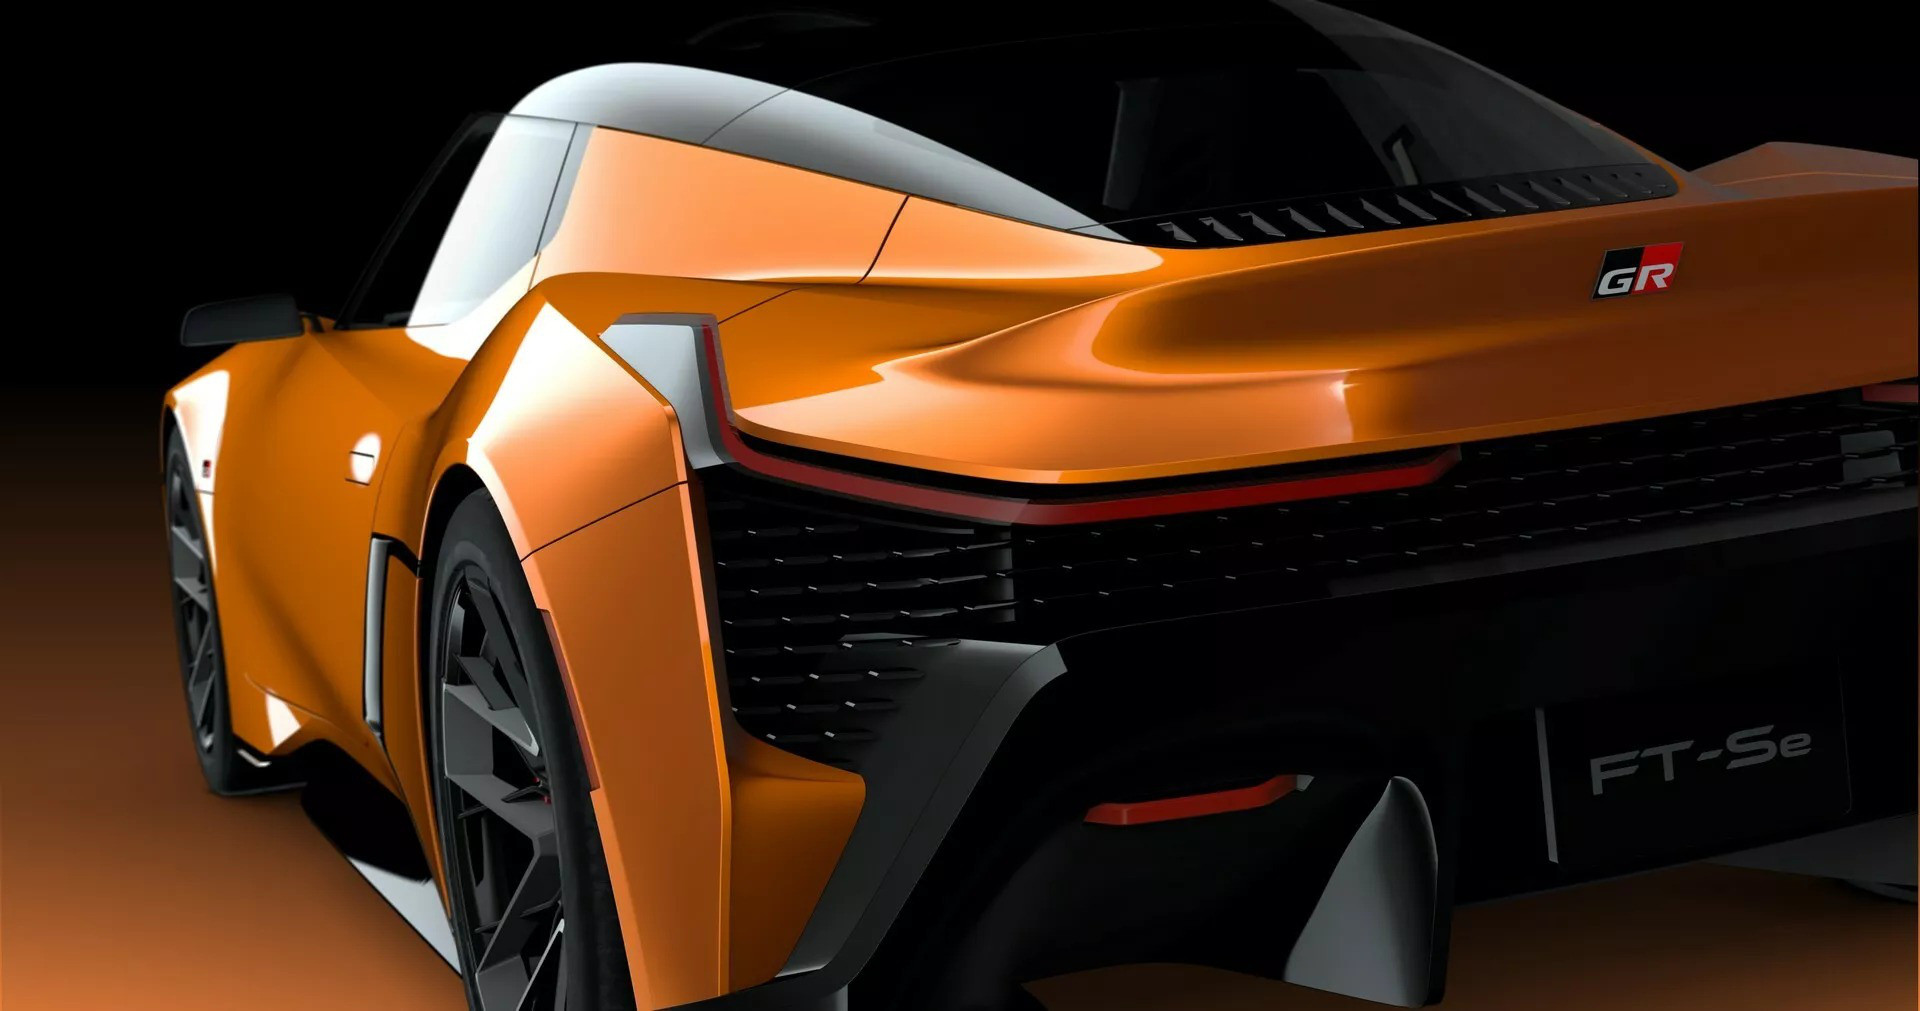 Thiết kế Toyota FT-Se mang đúng chất siêu xe tối ưu khí động học - Ảnh: Toyota